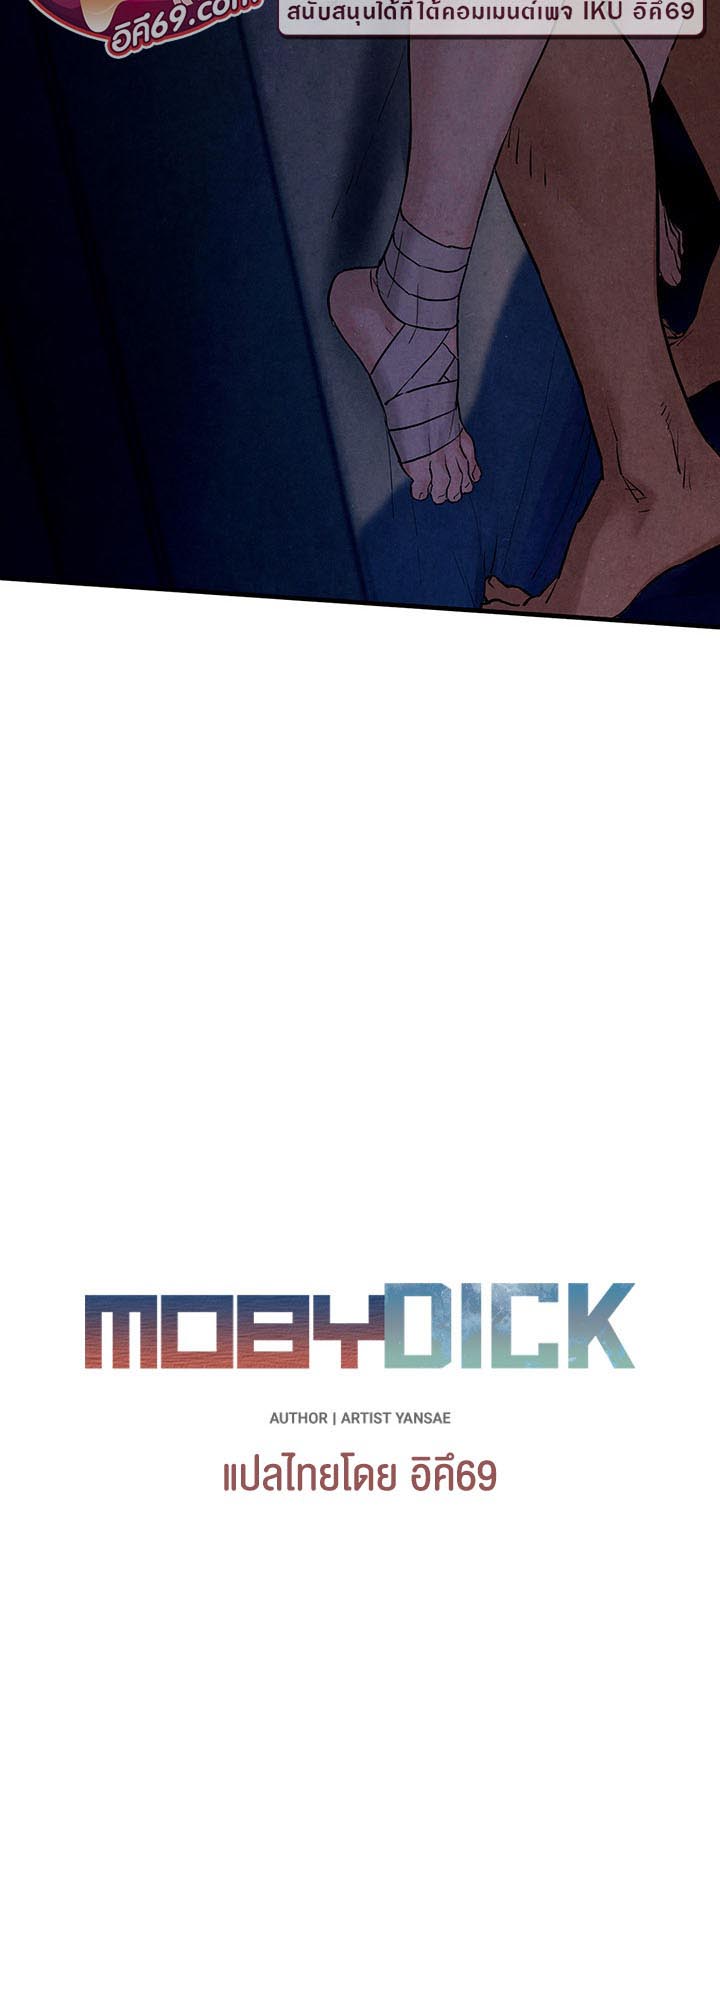 อ่านโดจิน เรื่อง Moby Dick โมบี้ดิ๊ก 11 07